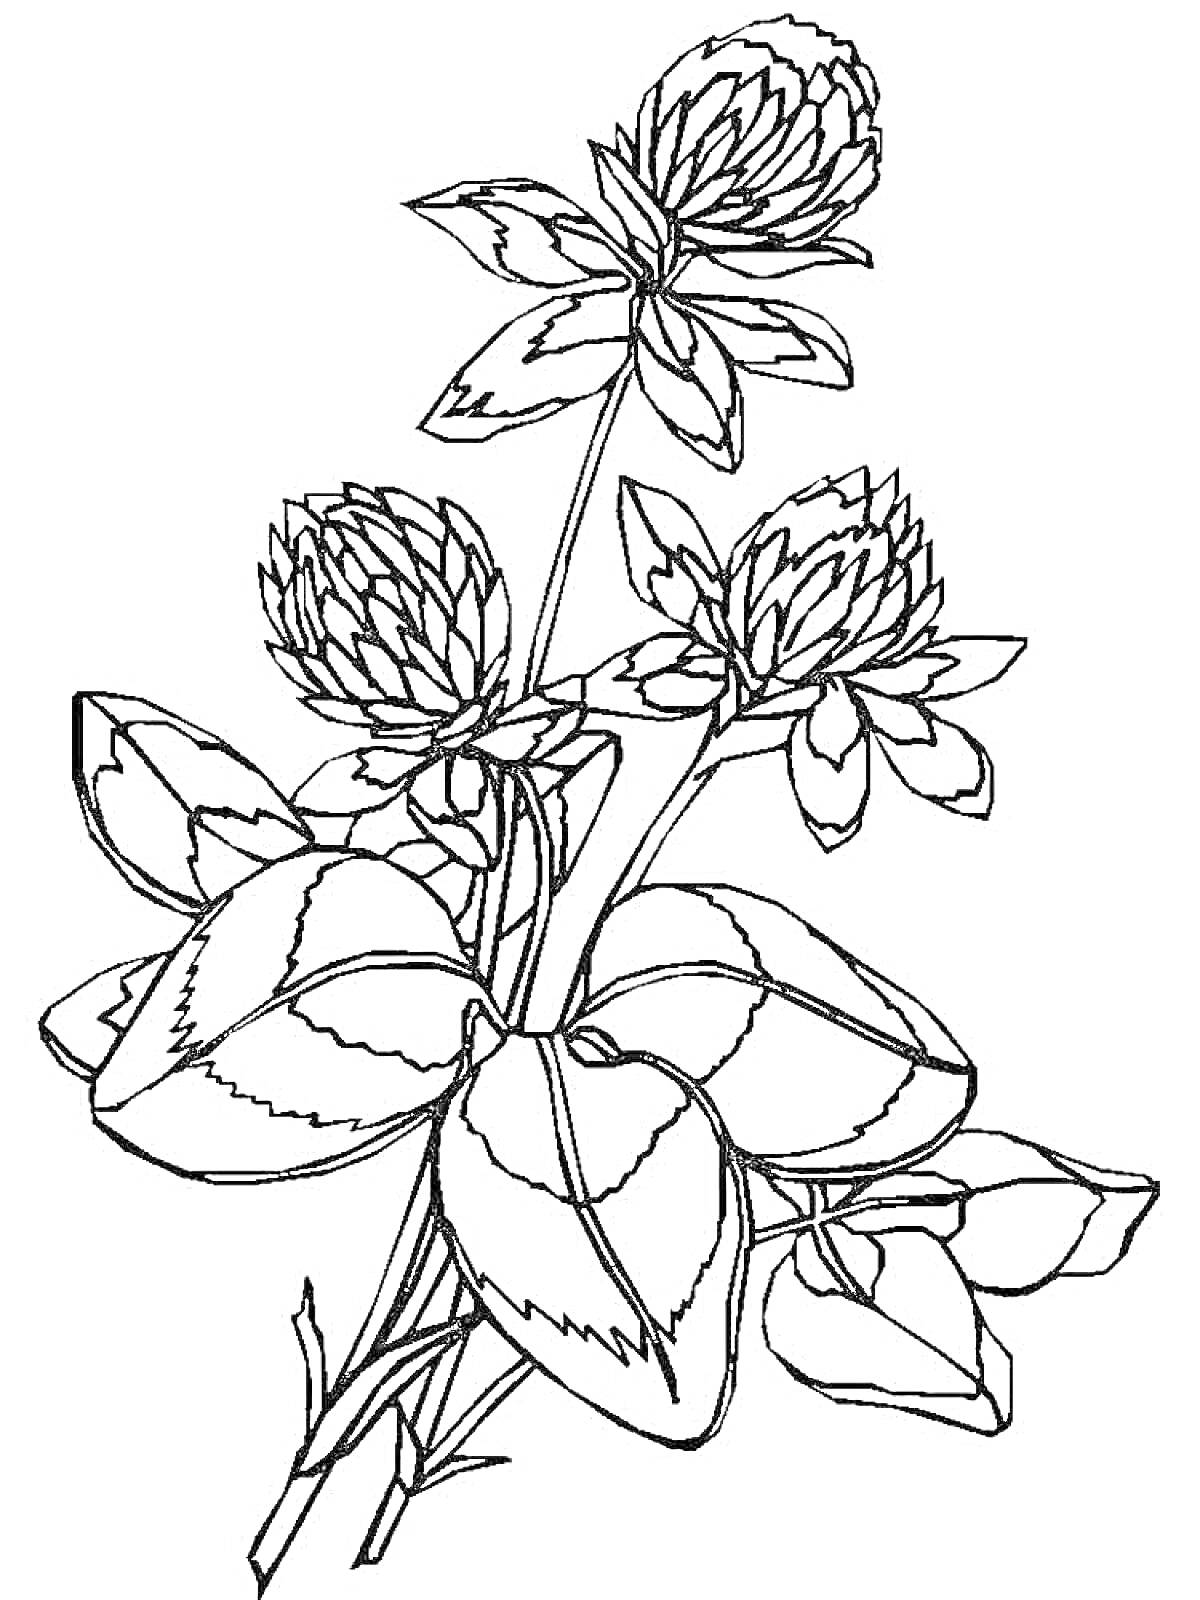 Раскраска с клевером, включающая три цветка клевера и несколько листьев.